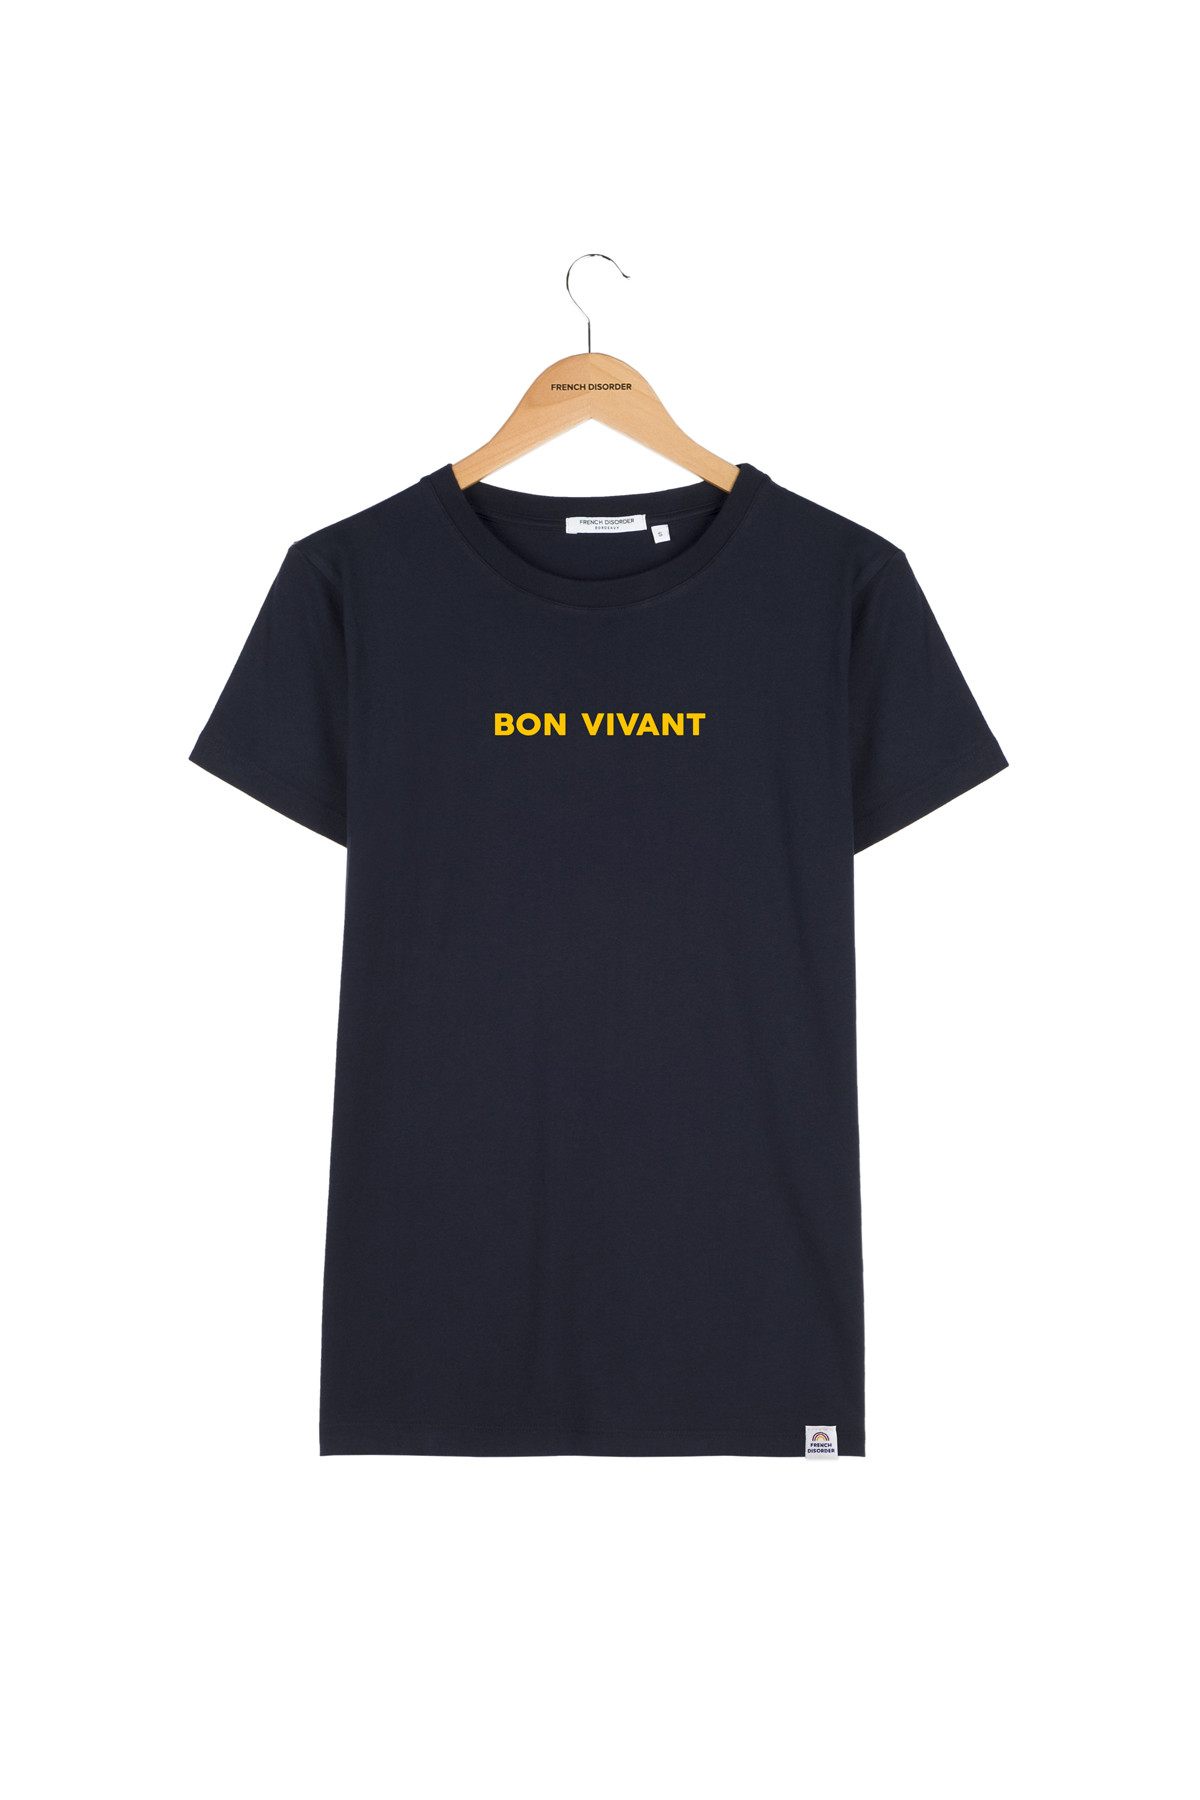 Tshirt BON VIVANT French Disorder